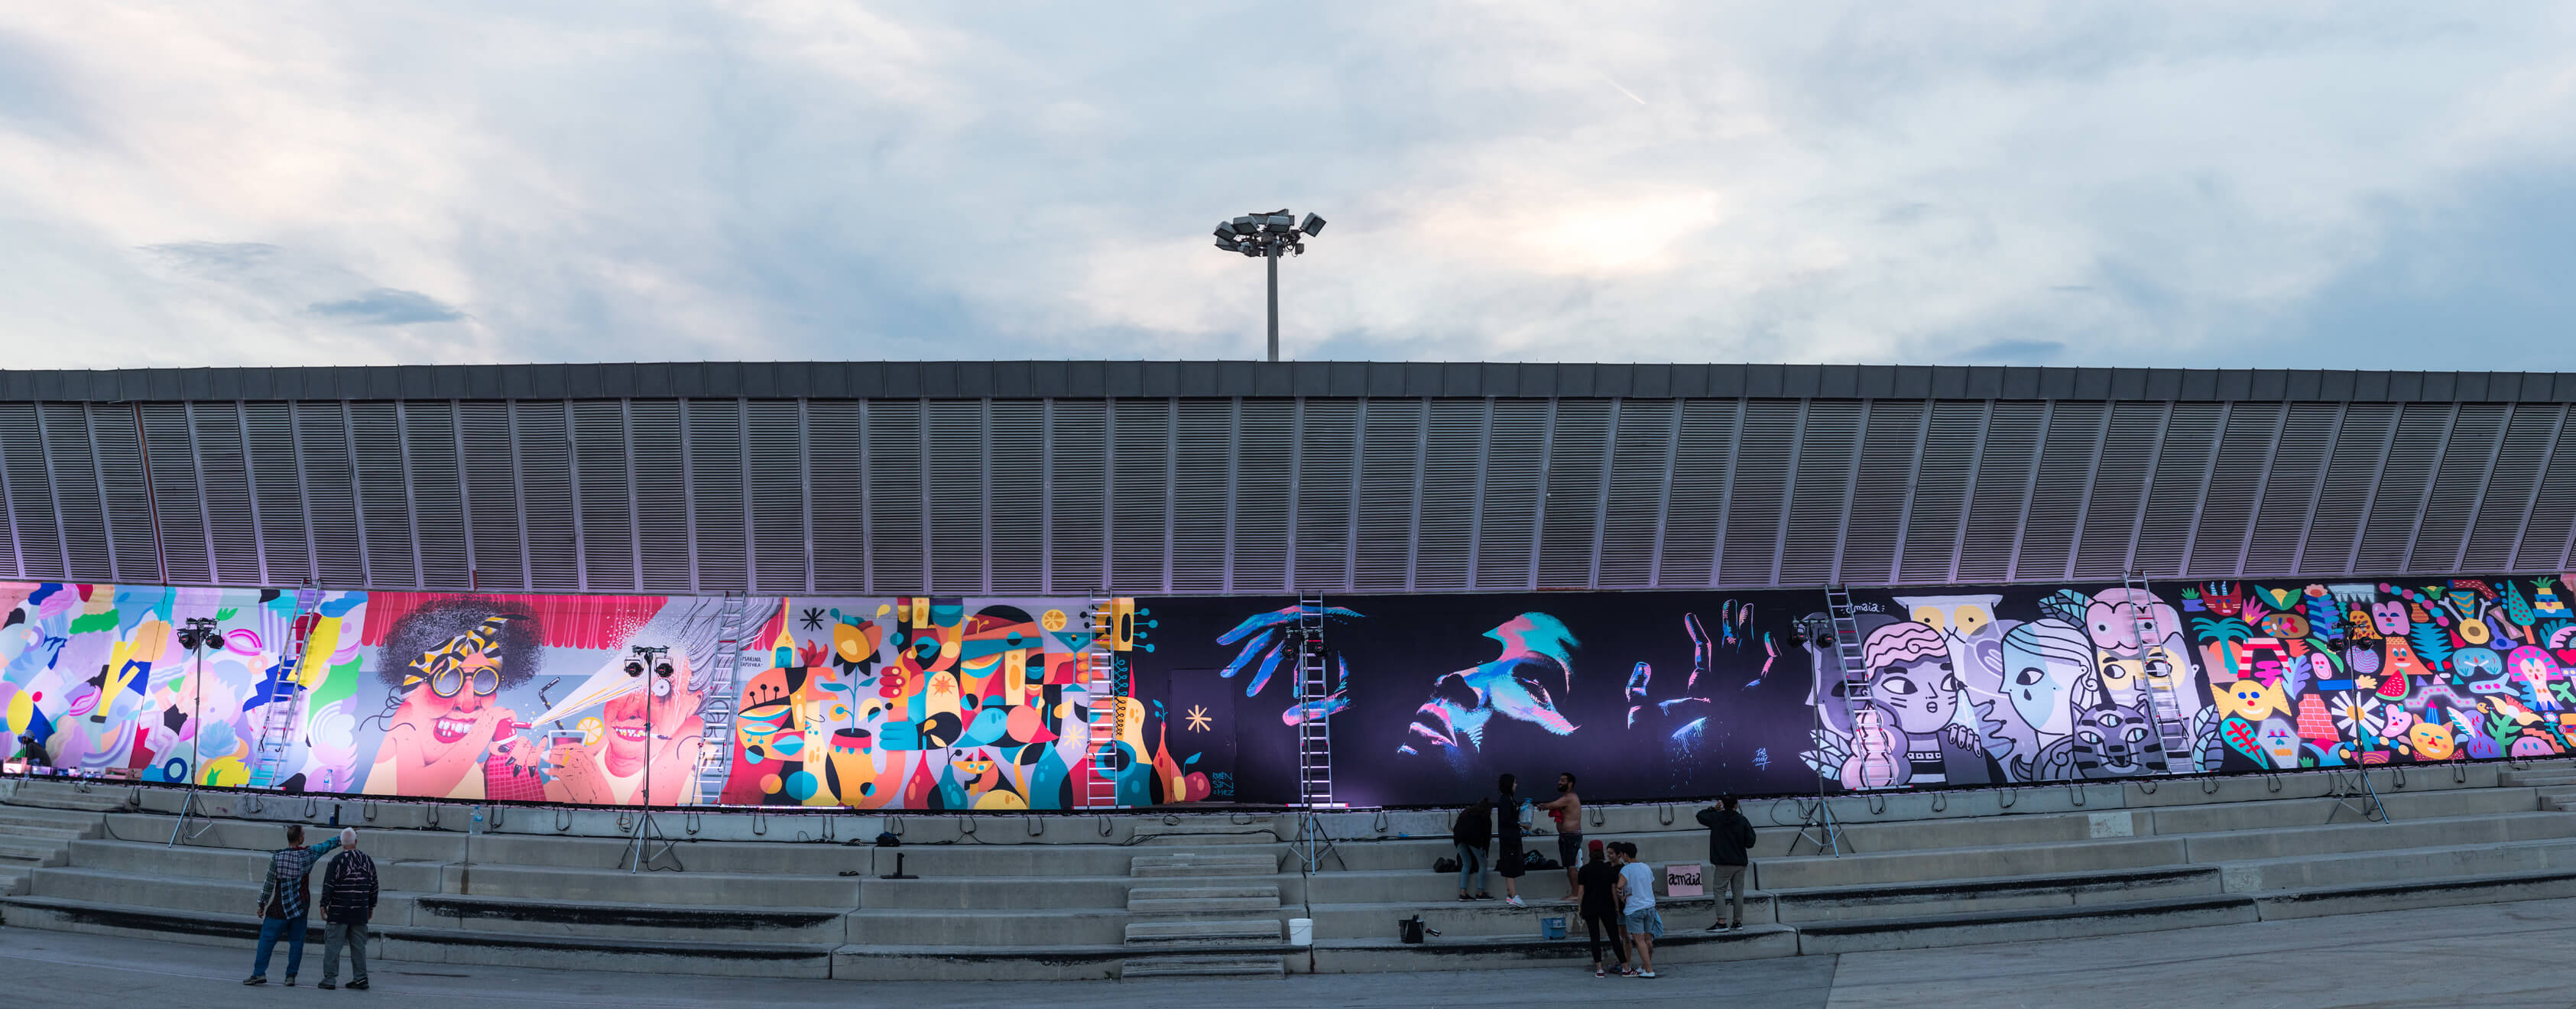 Mur créatif des arts de la rue au festival de musique Primavera Sound de Barcelone sponsorisé par SEAT